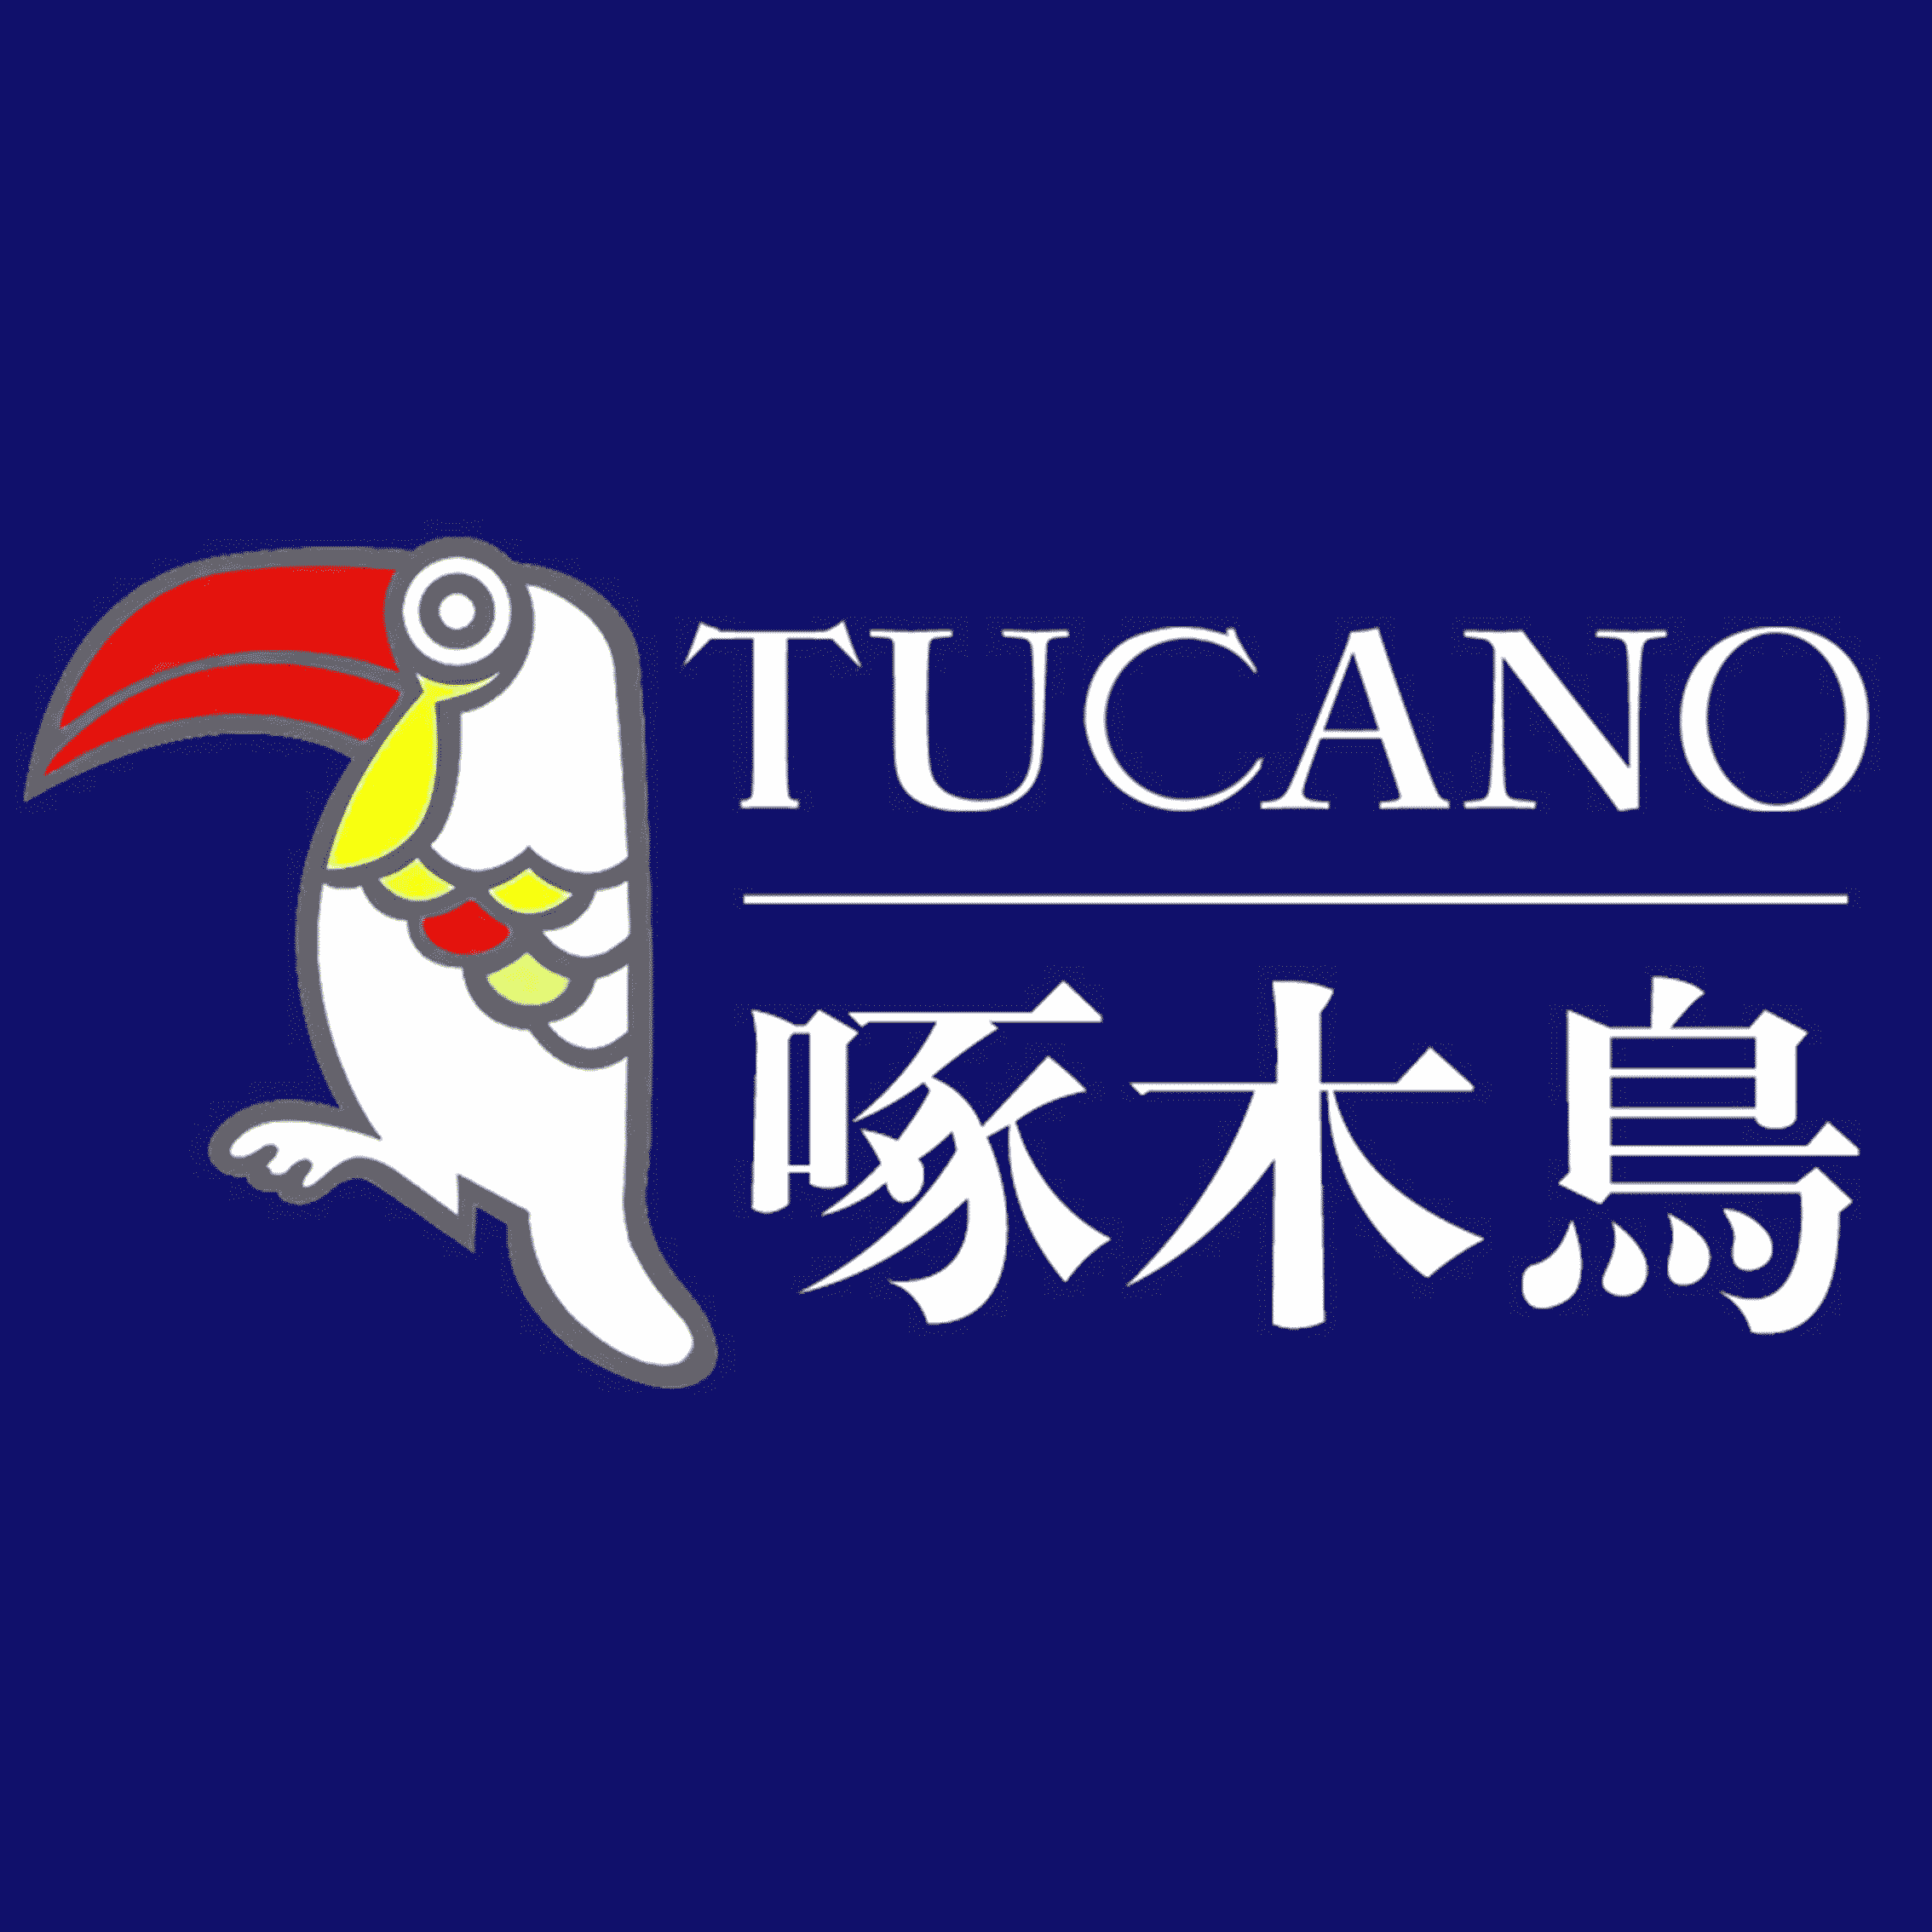 意大利啄木鸟品牌图标图片